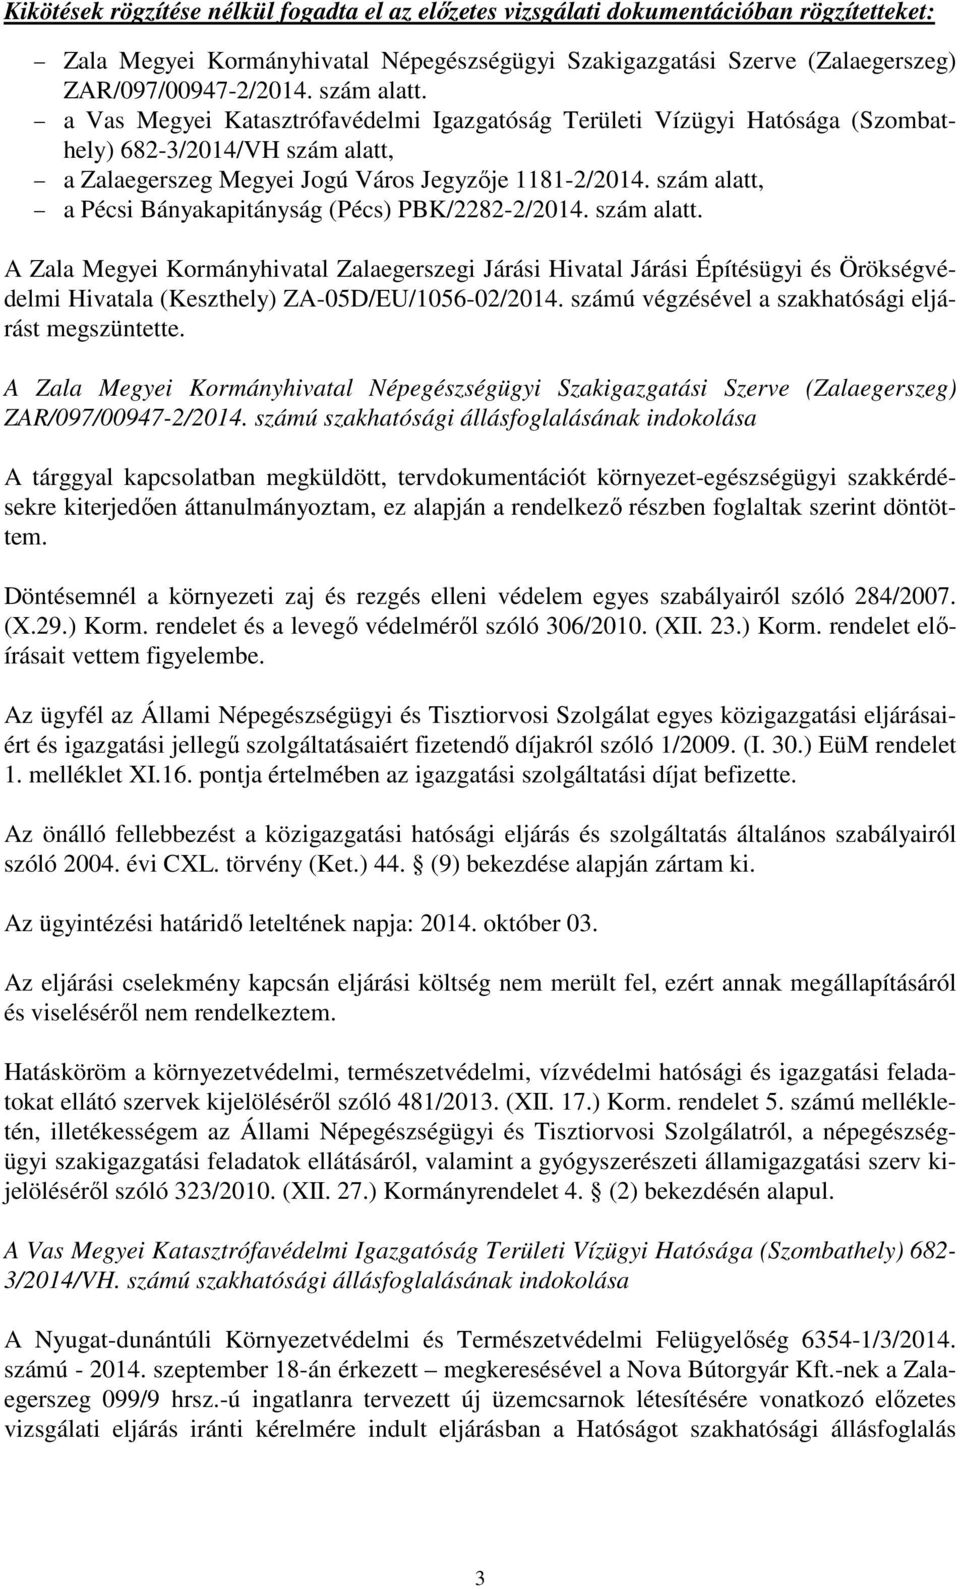 szám alatt, a Pécsi Bányakapitányság (Pécs) PBK/2282-2/2014. szám alatt.